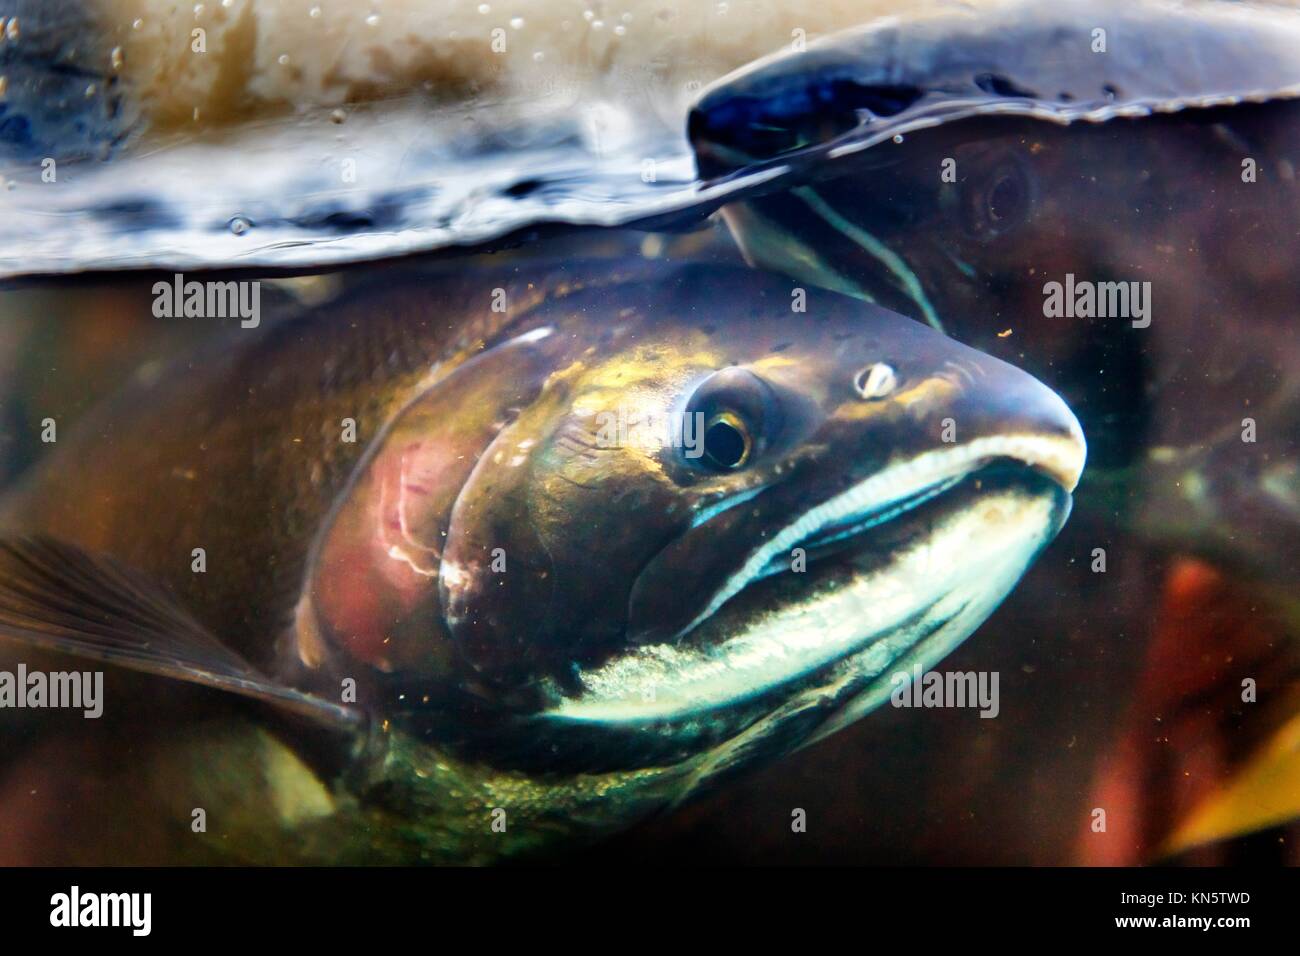 La peur l'écloserie de saumon Oncorhynchus tshawytscha Issaquah Washington. Nager jusqu'à la saumon Issaquah Creek de la mer et sont pris dans l'écloserie. Dans Banque D'Images